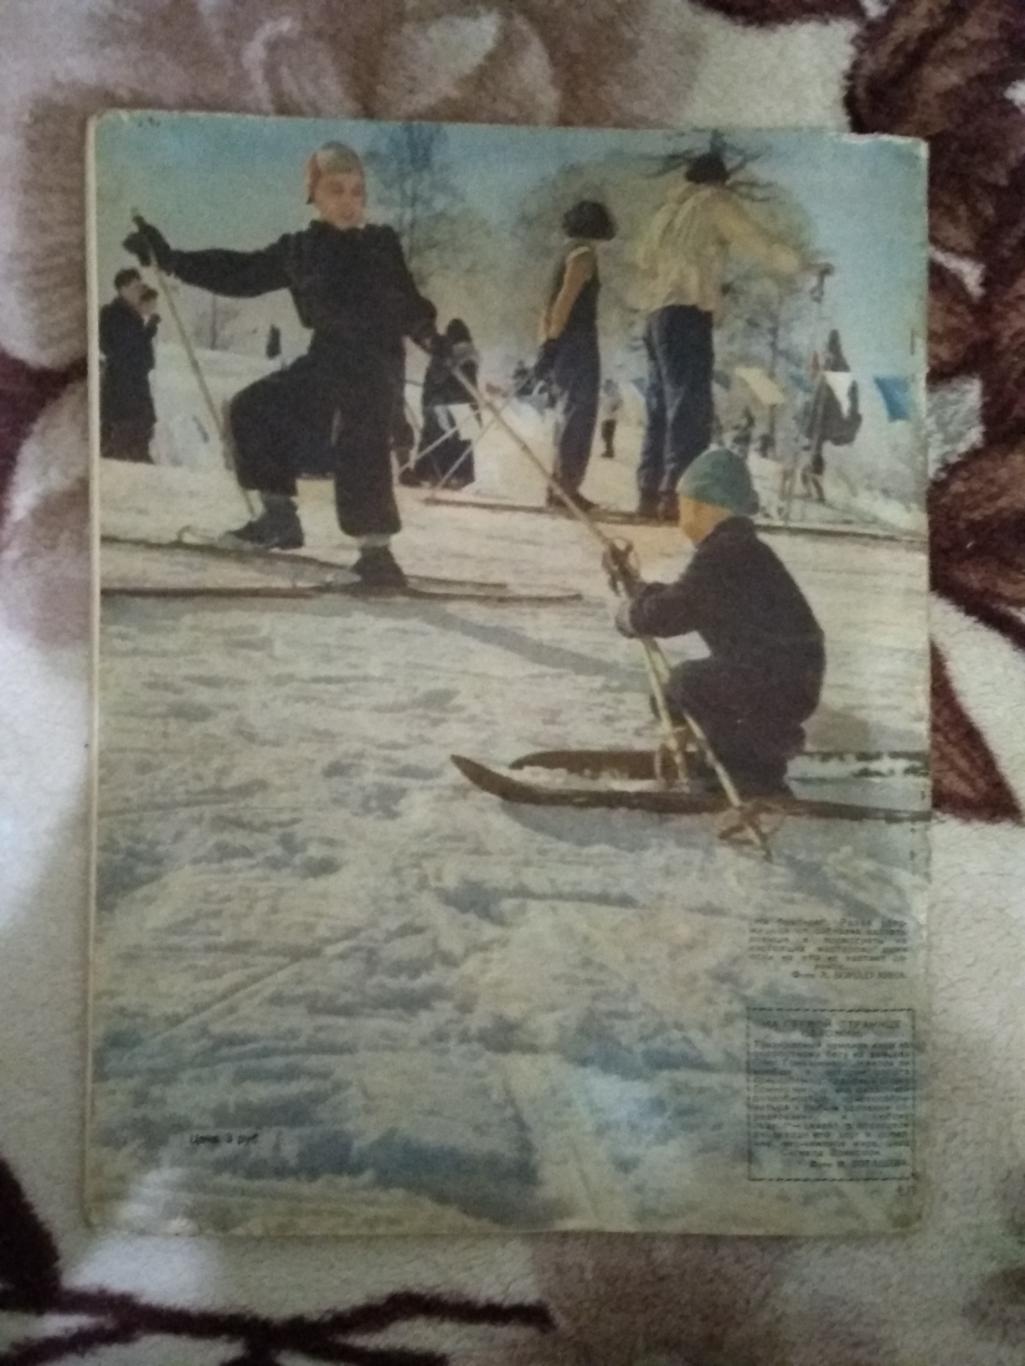 Журнал.Физкультура и спорт № 1 1959 г. (ФиС). 1